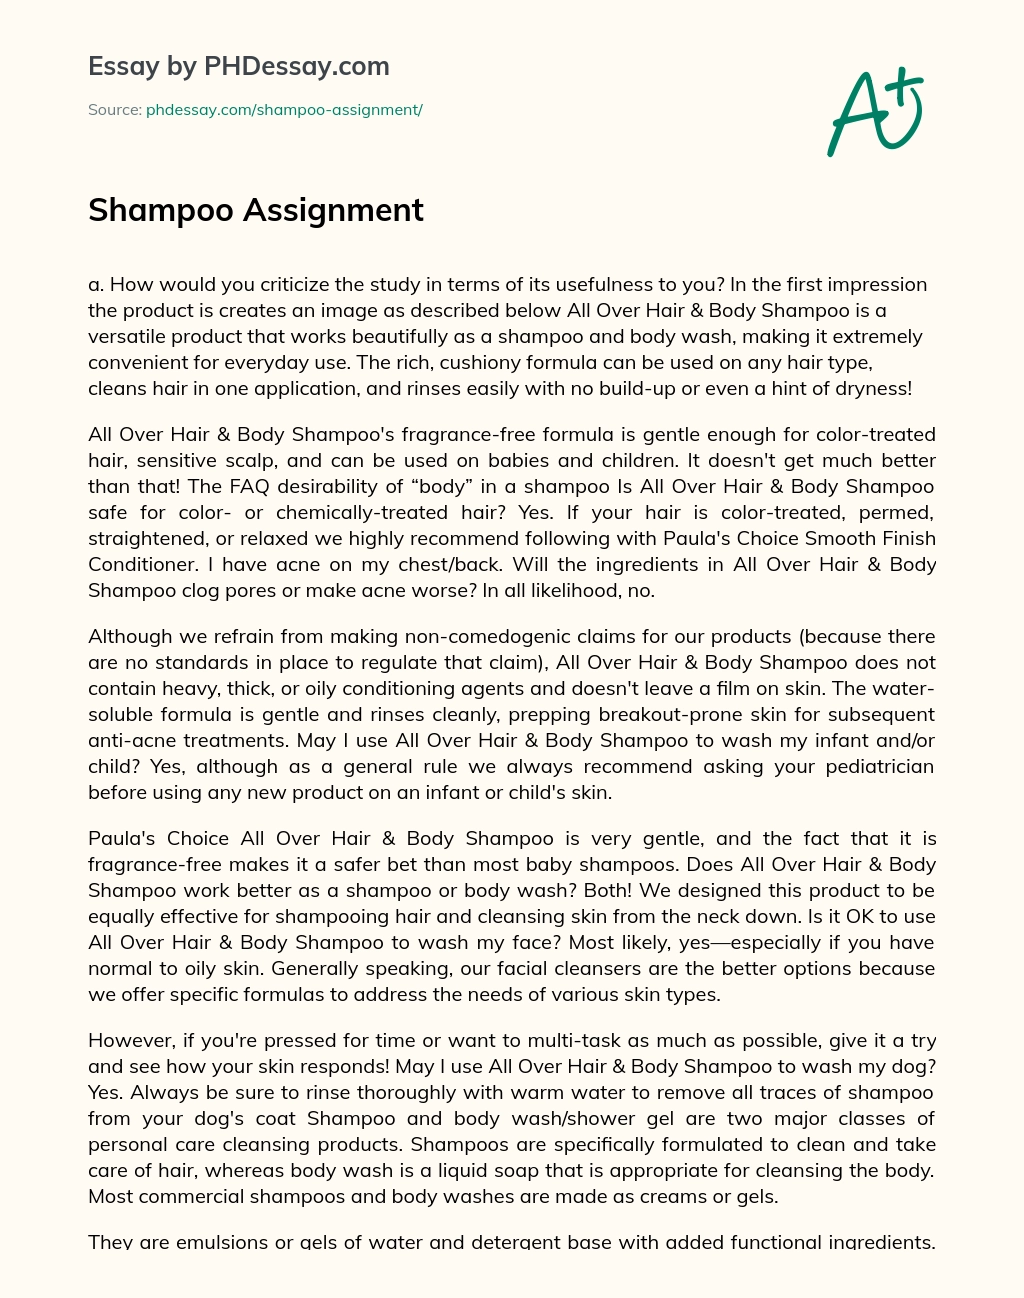 Shampoo Assignment essay